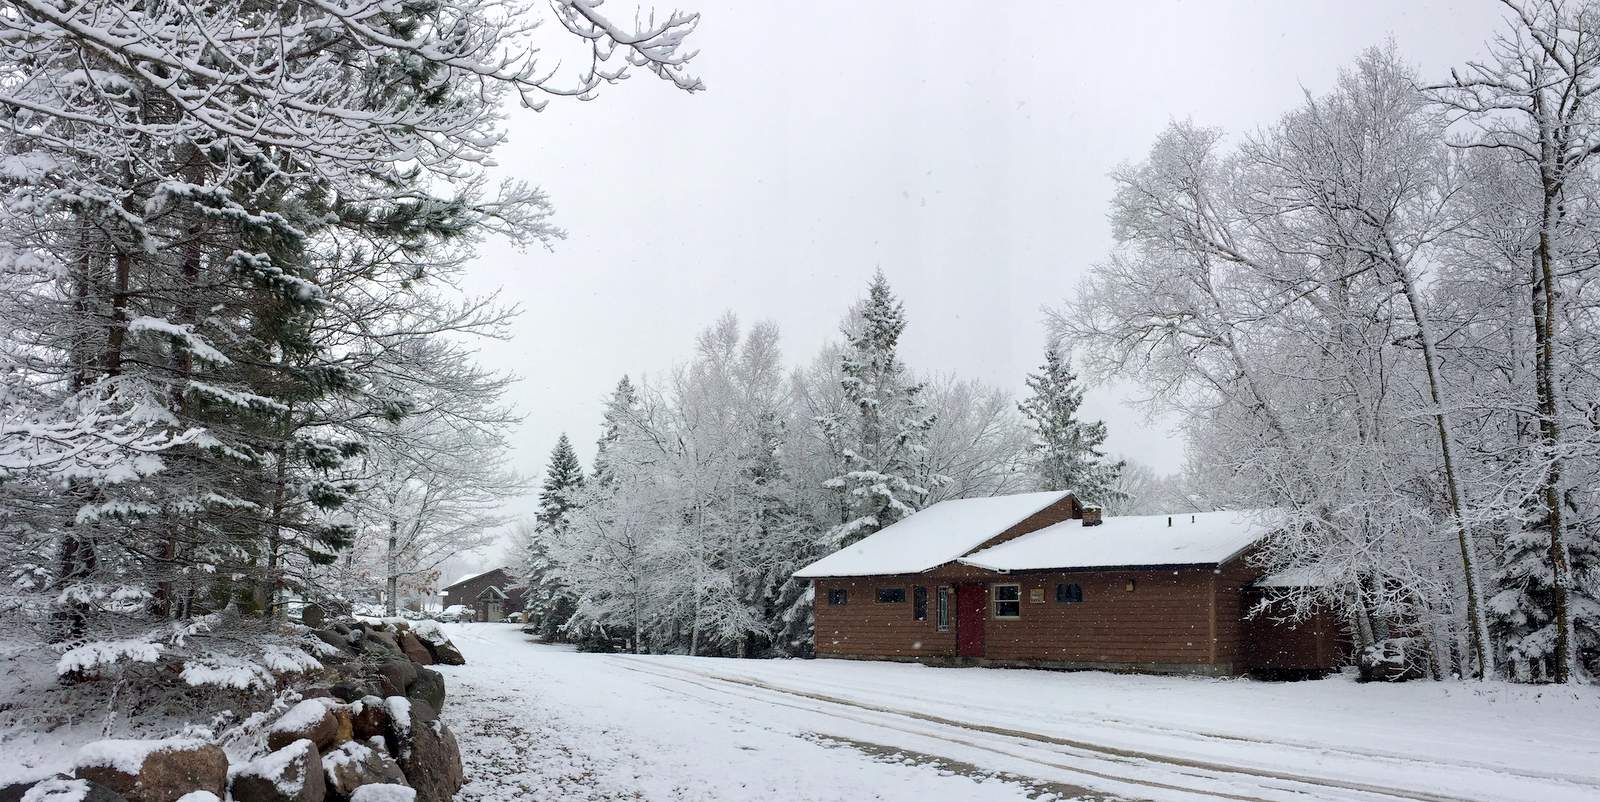 Wintry scene near Brant cabin. November 30th, 2016